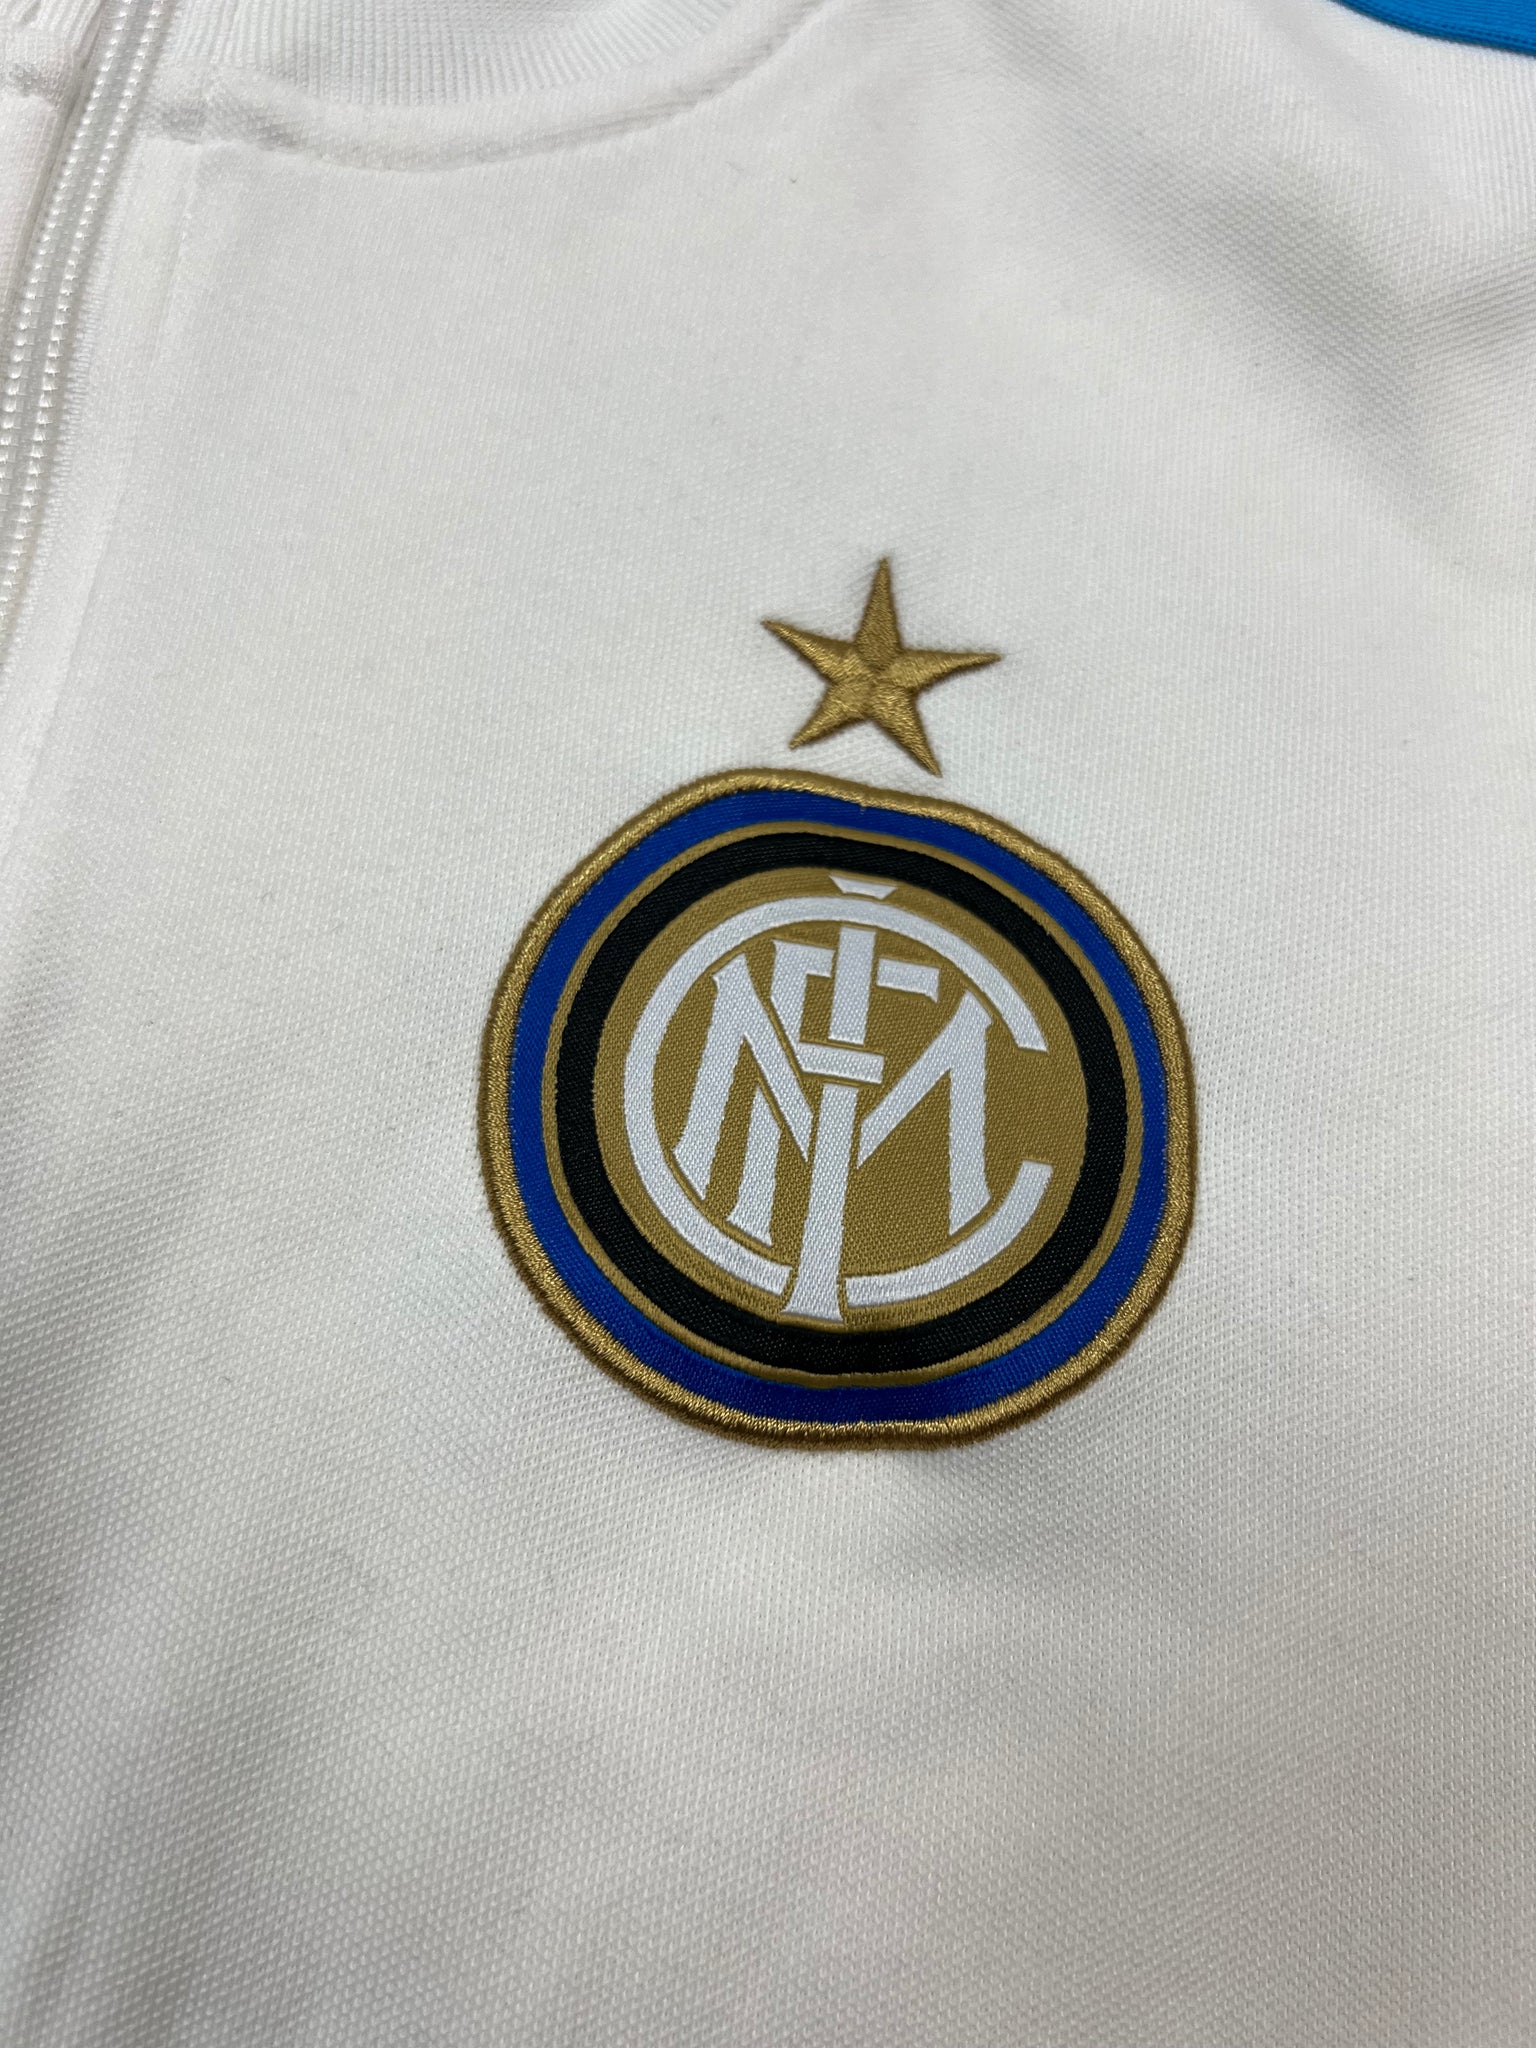 Nike Inter Milan Track Jacket (M)